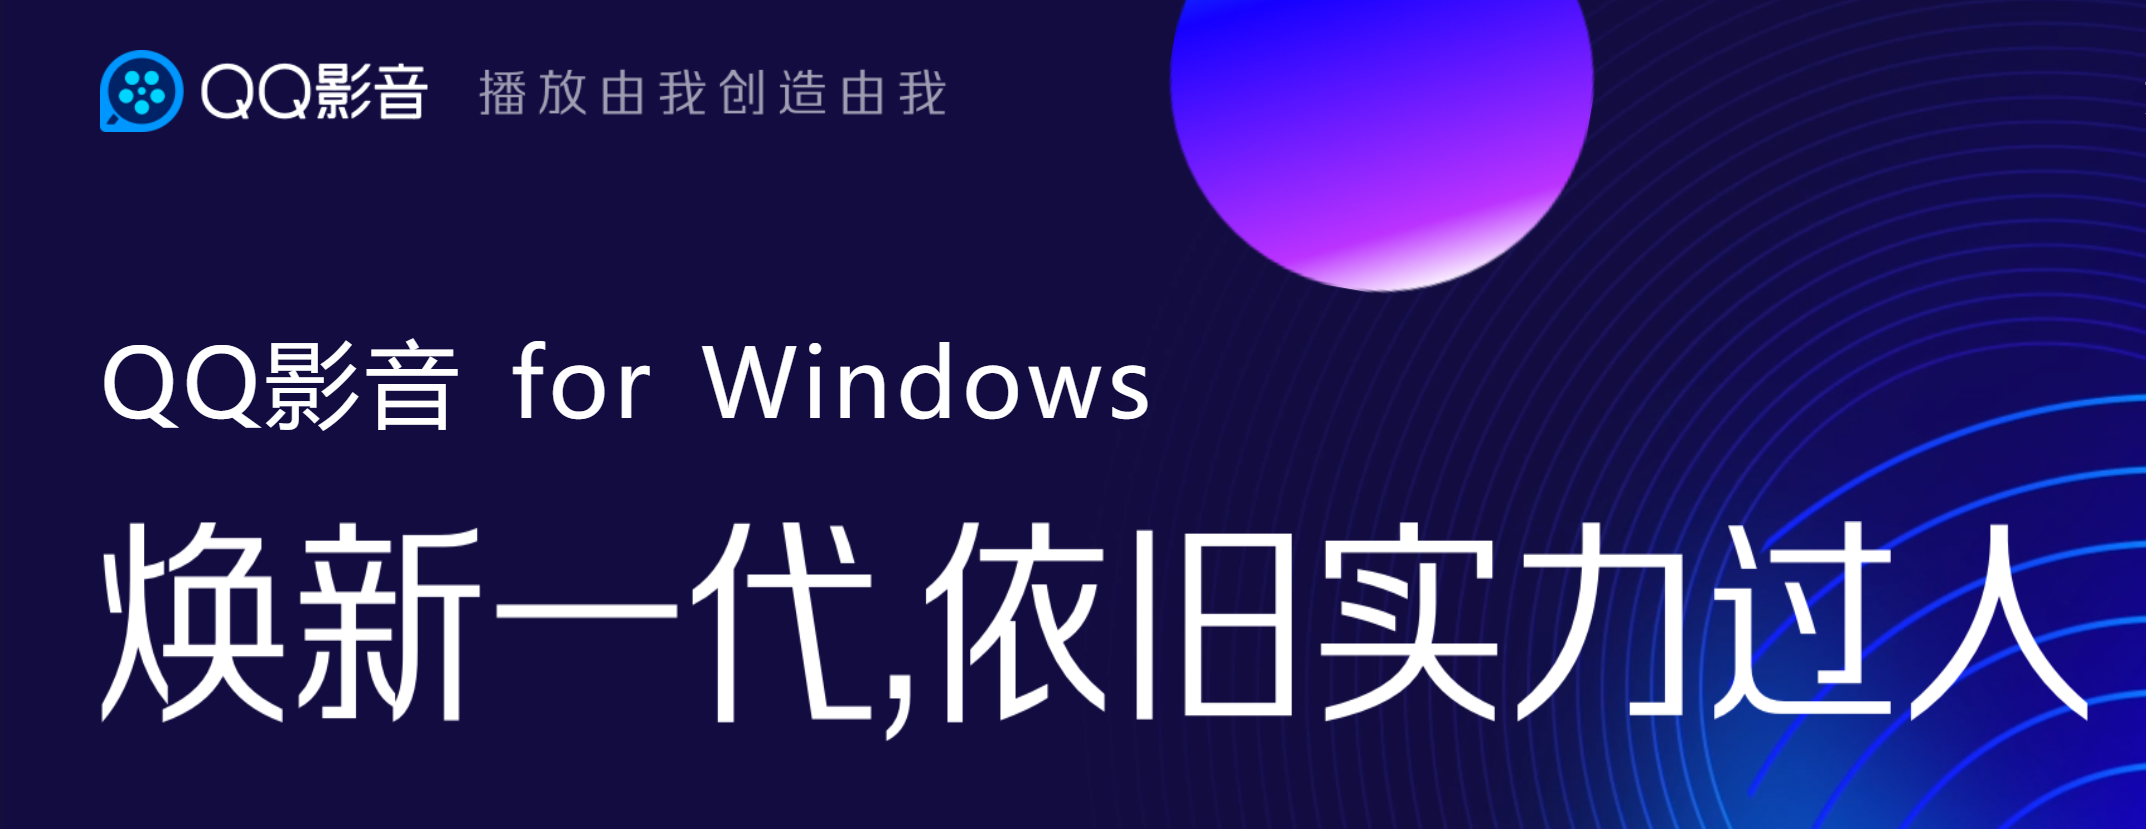 久别重逢 焕新而来 QQ影音 4.3.4.896 官方正式版 for Windows